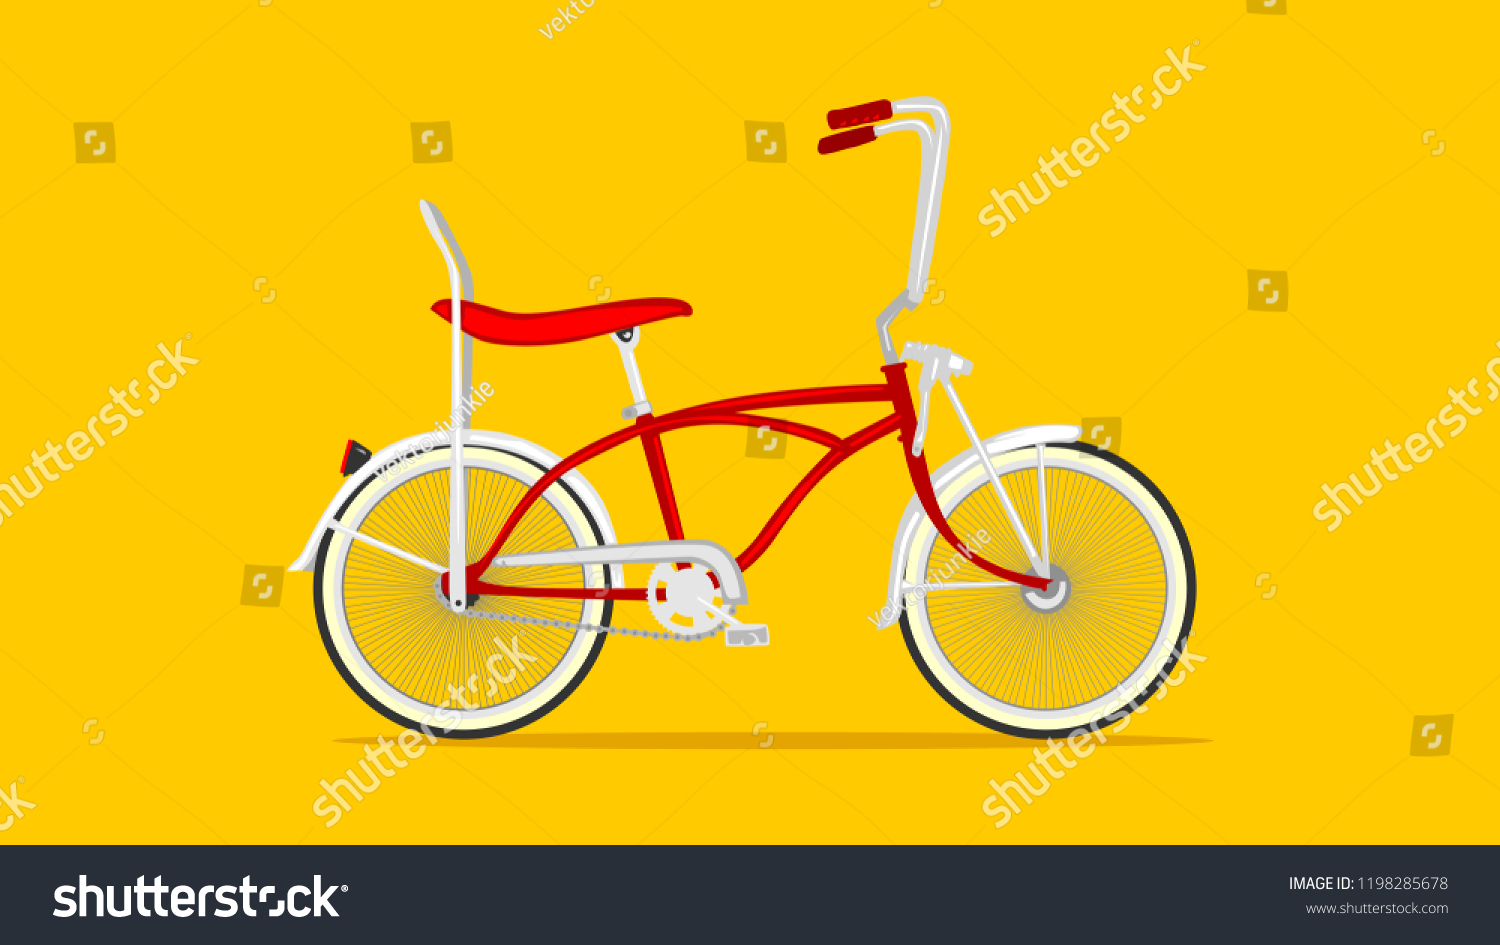 red rider bike